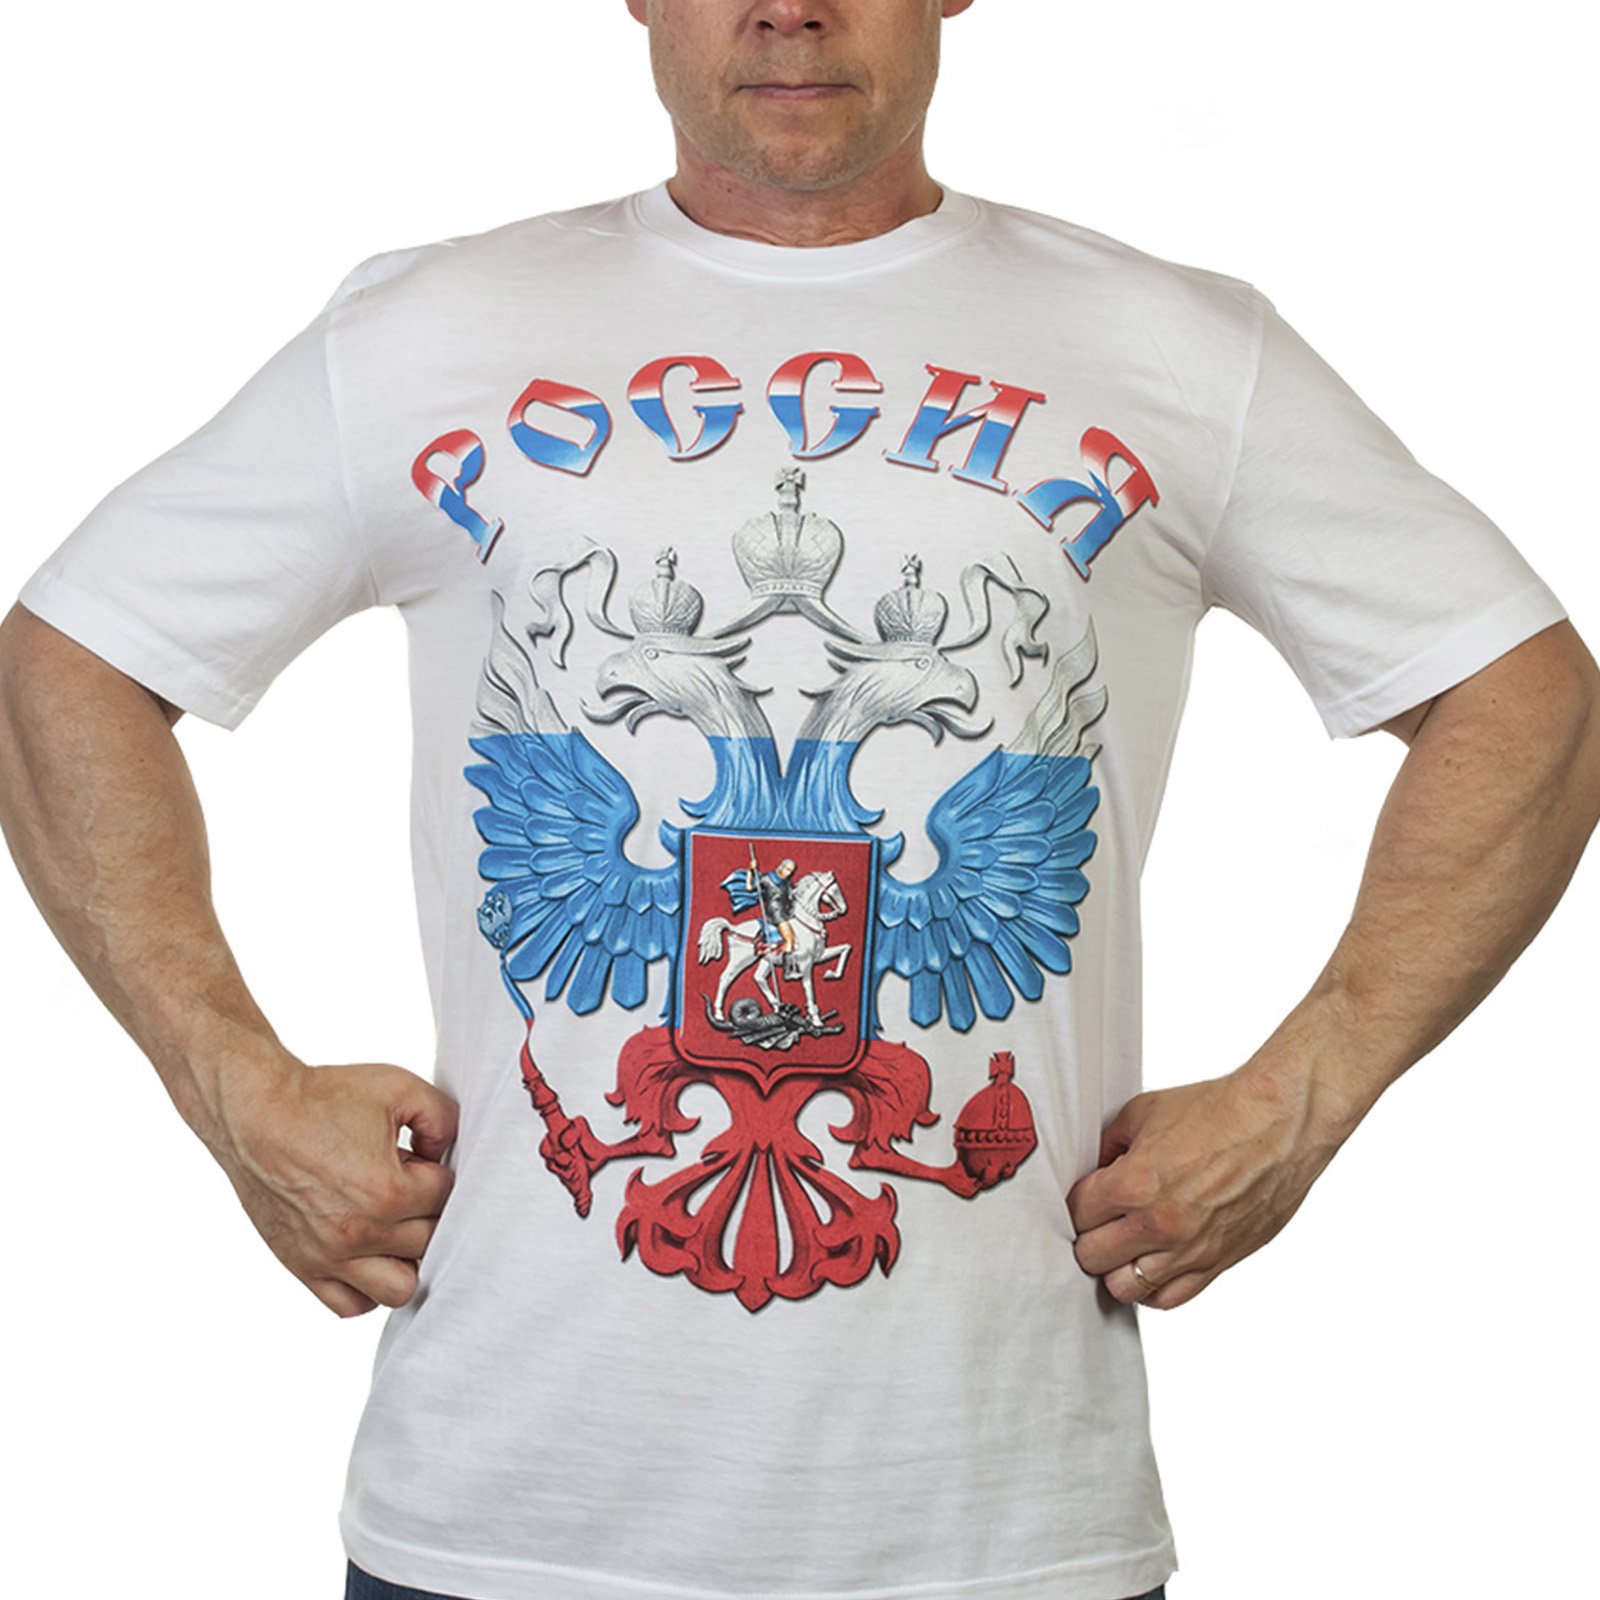 Купить белую футболку Россия по низкой цене с доставкой